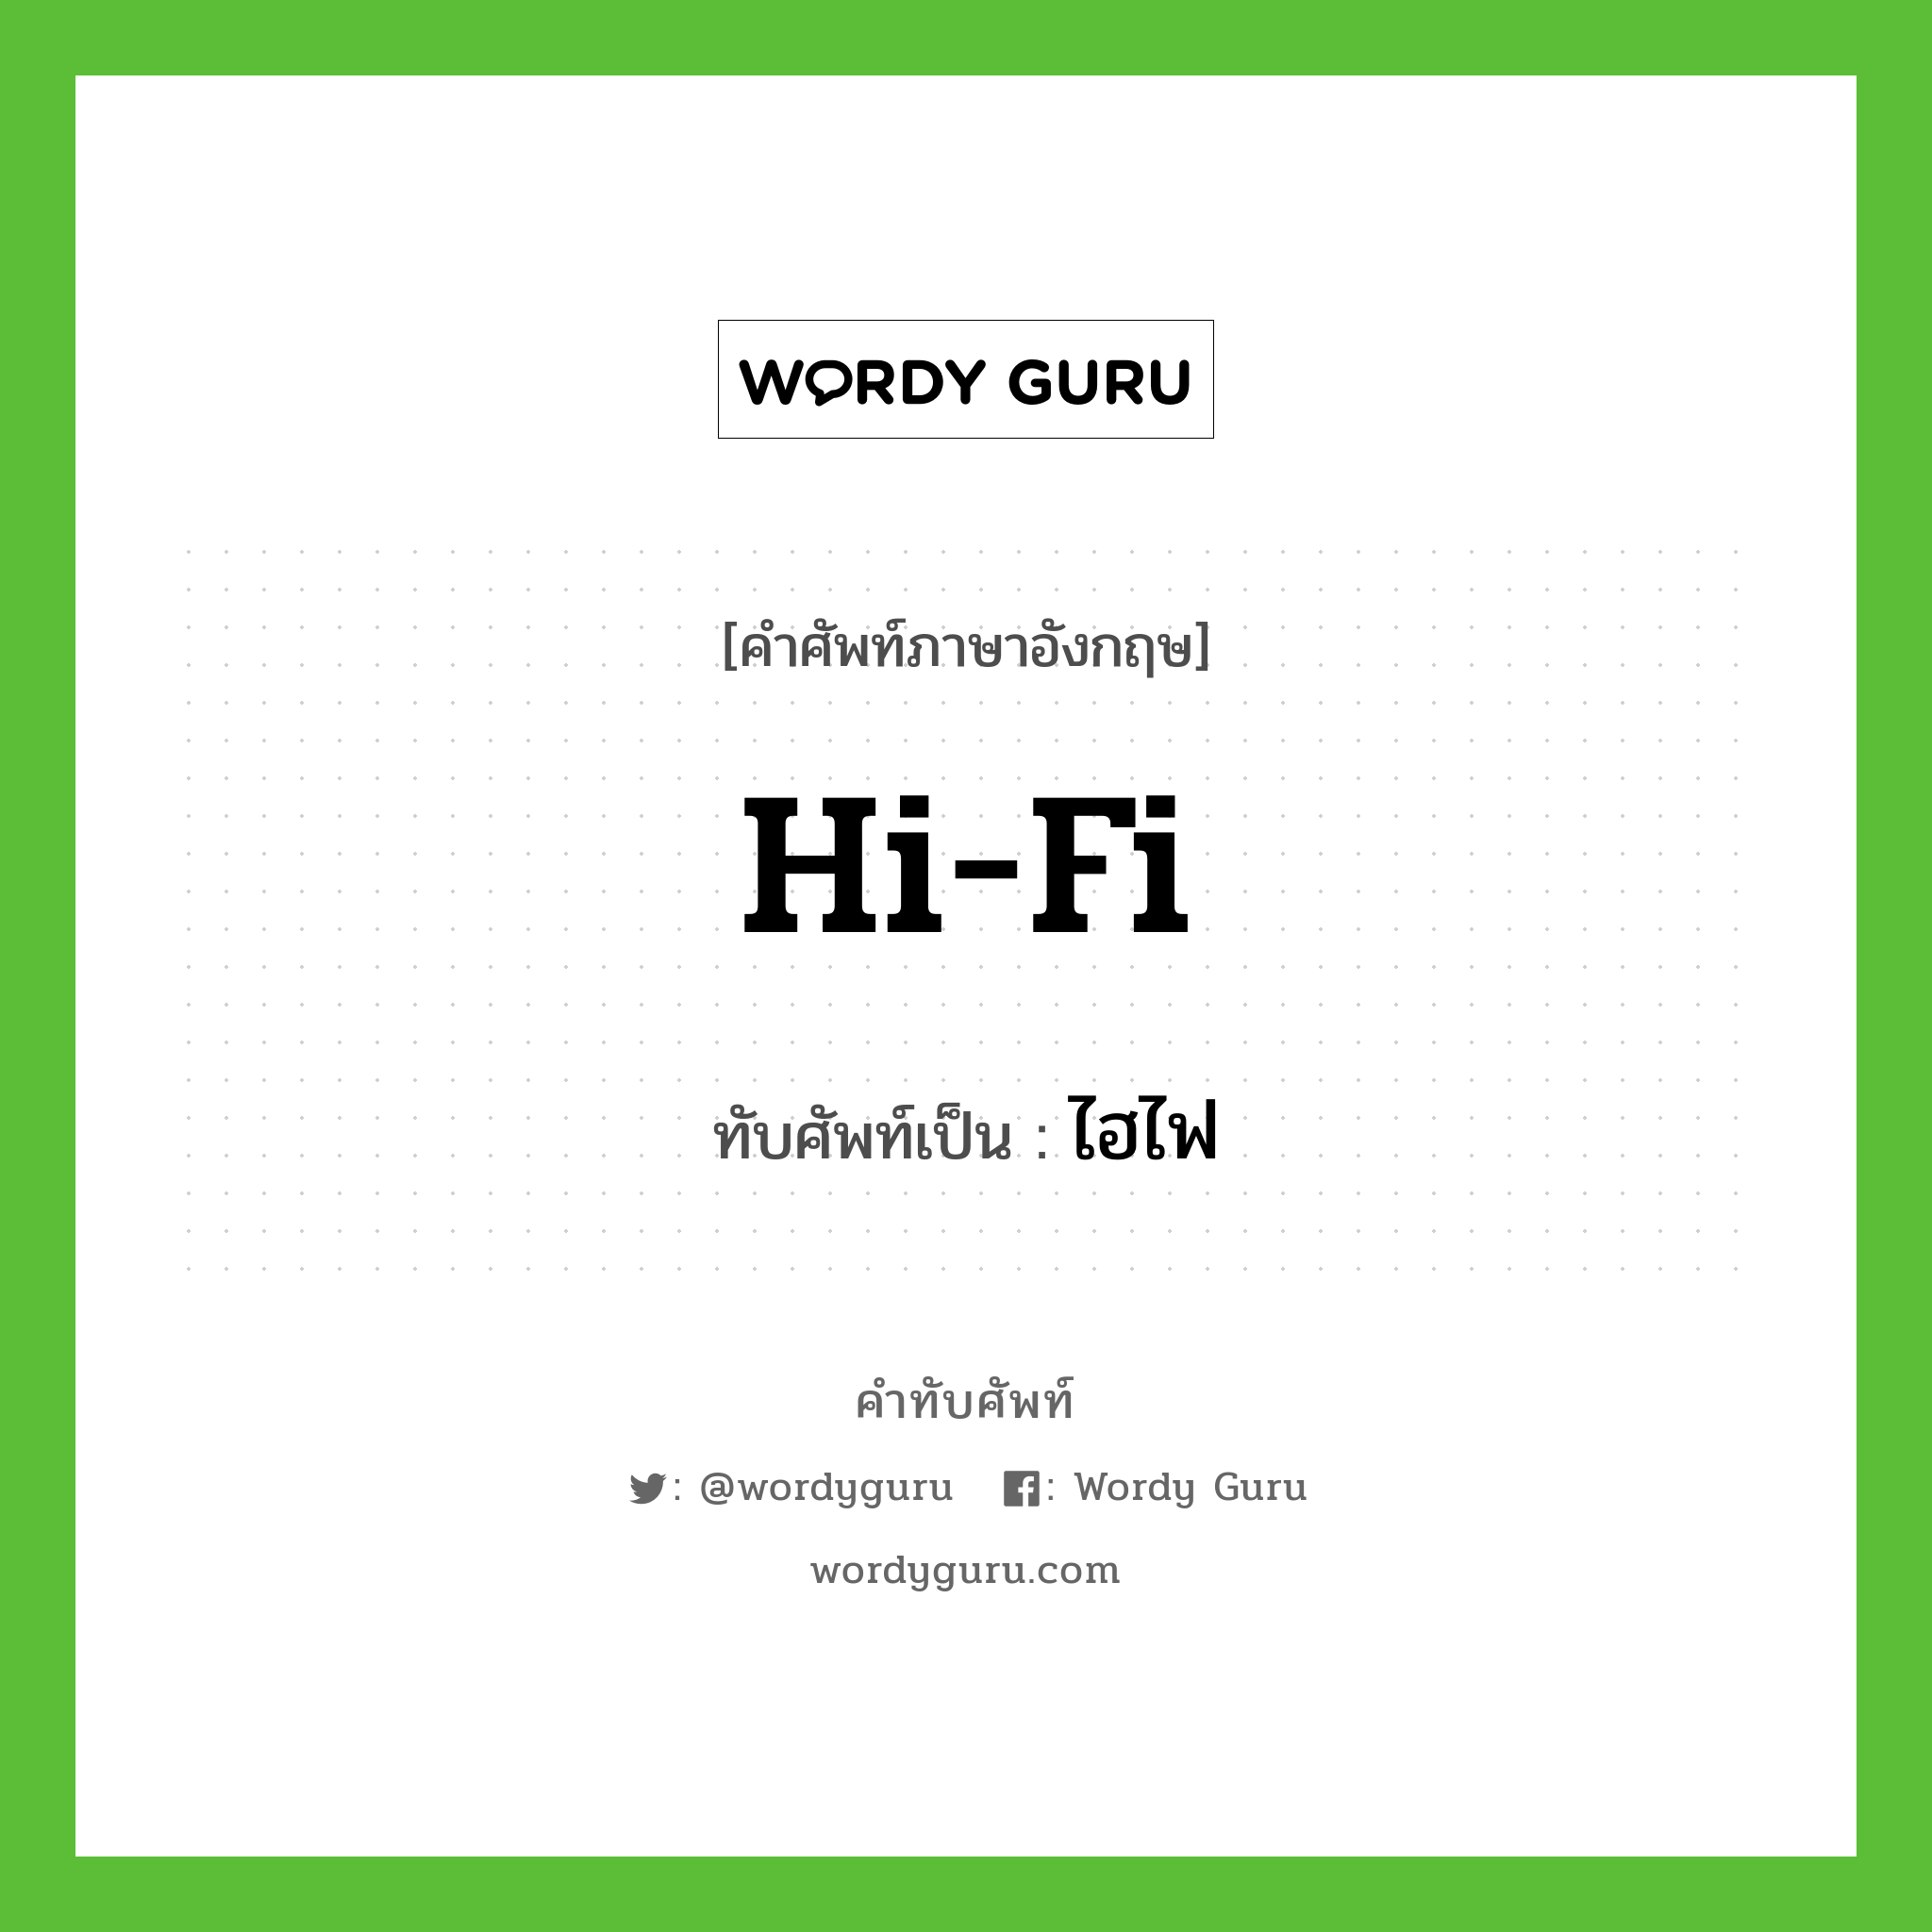 hi-fi เขียนเป็นคำไทยว่าอะไร?, คำศัพท์ภาษาอังกฤษ hi-fi ทับศัพท์เป็น ไฮไฟ